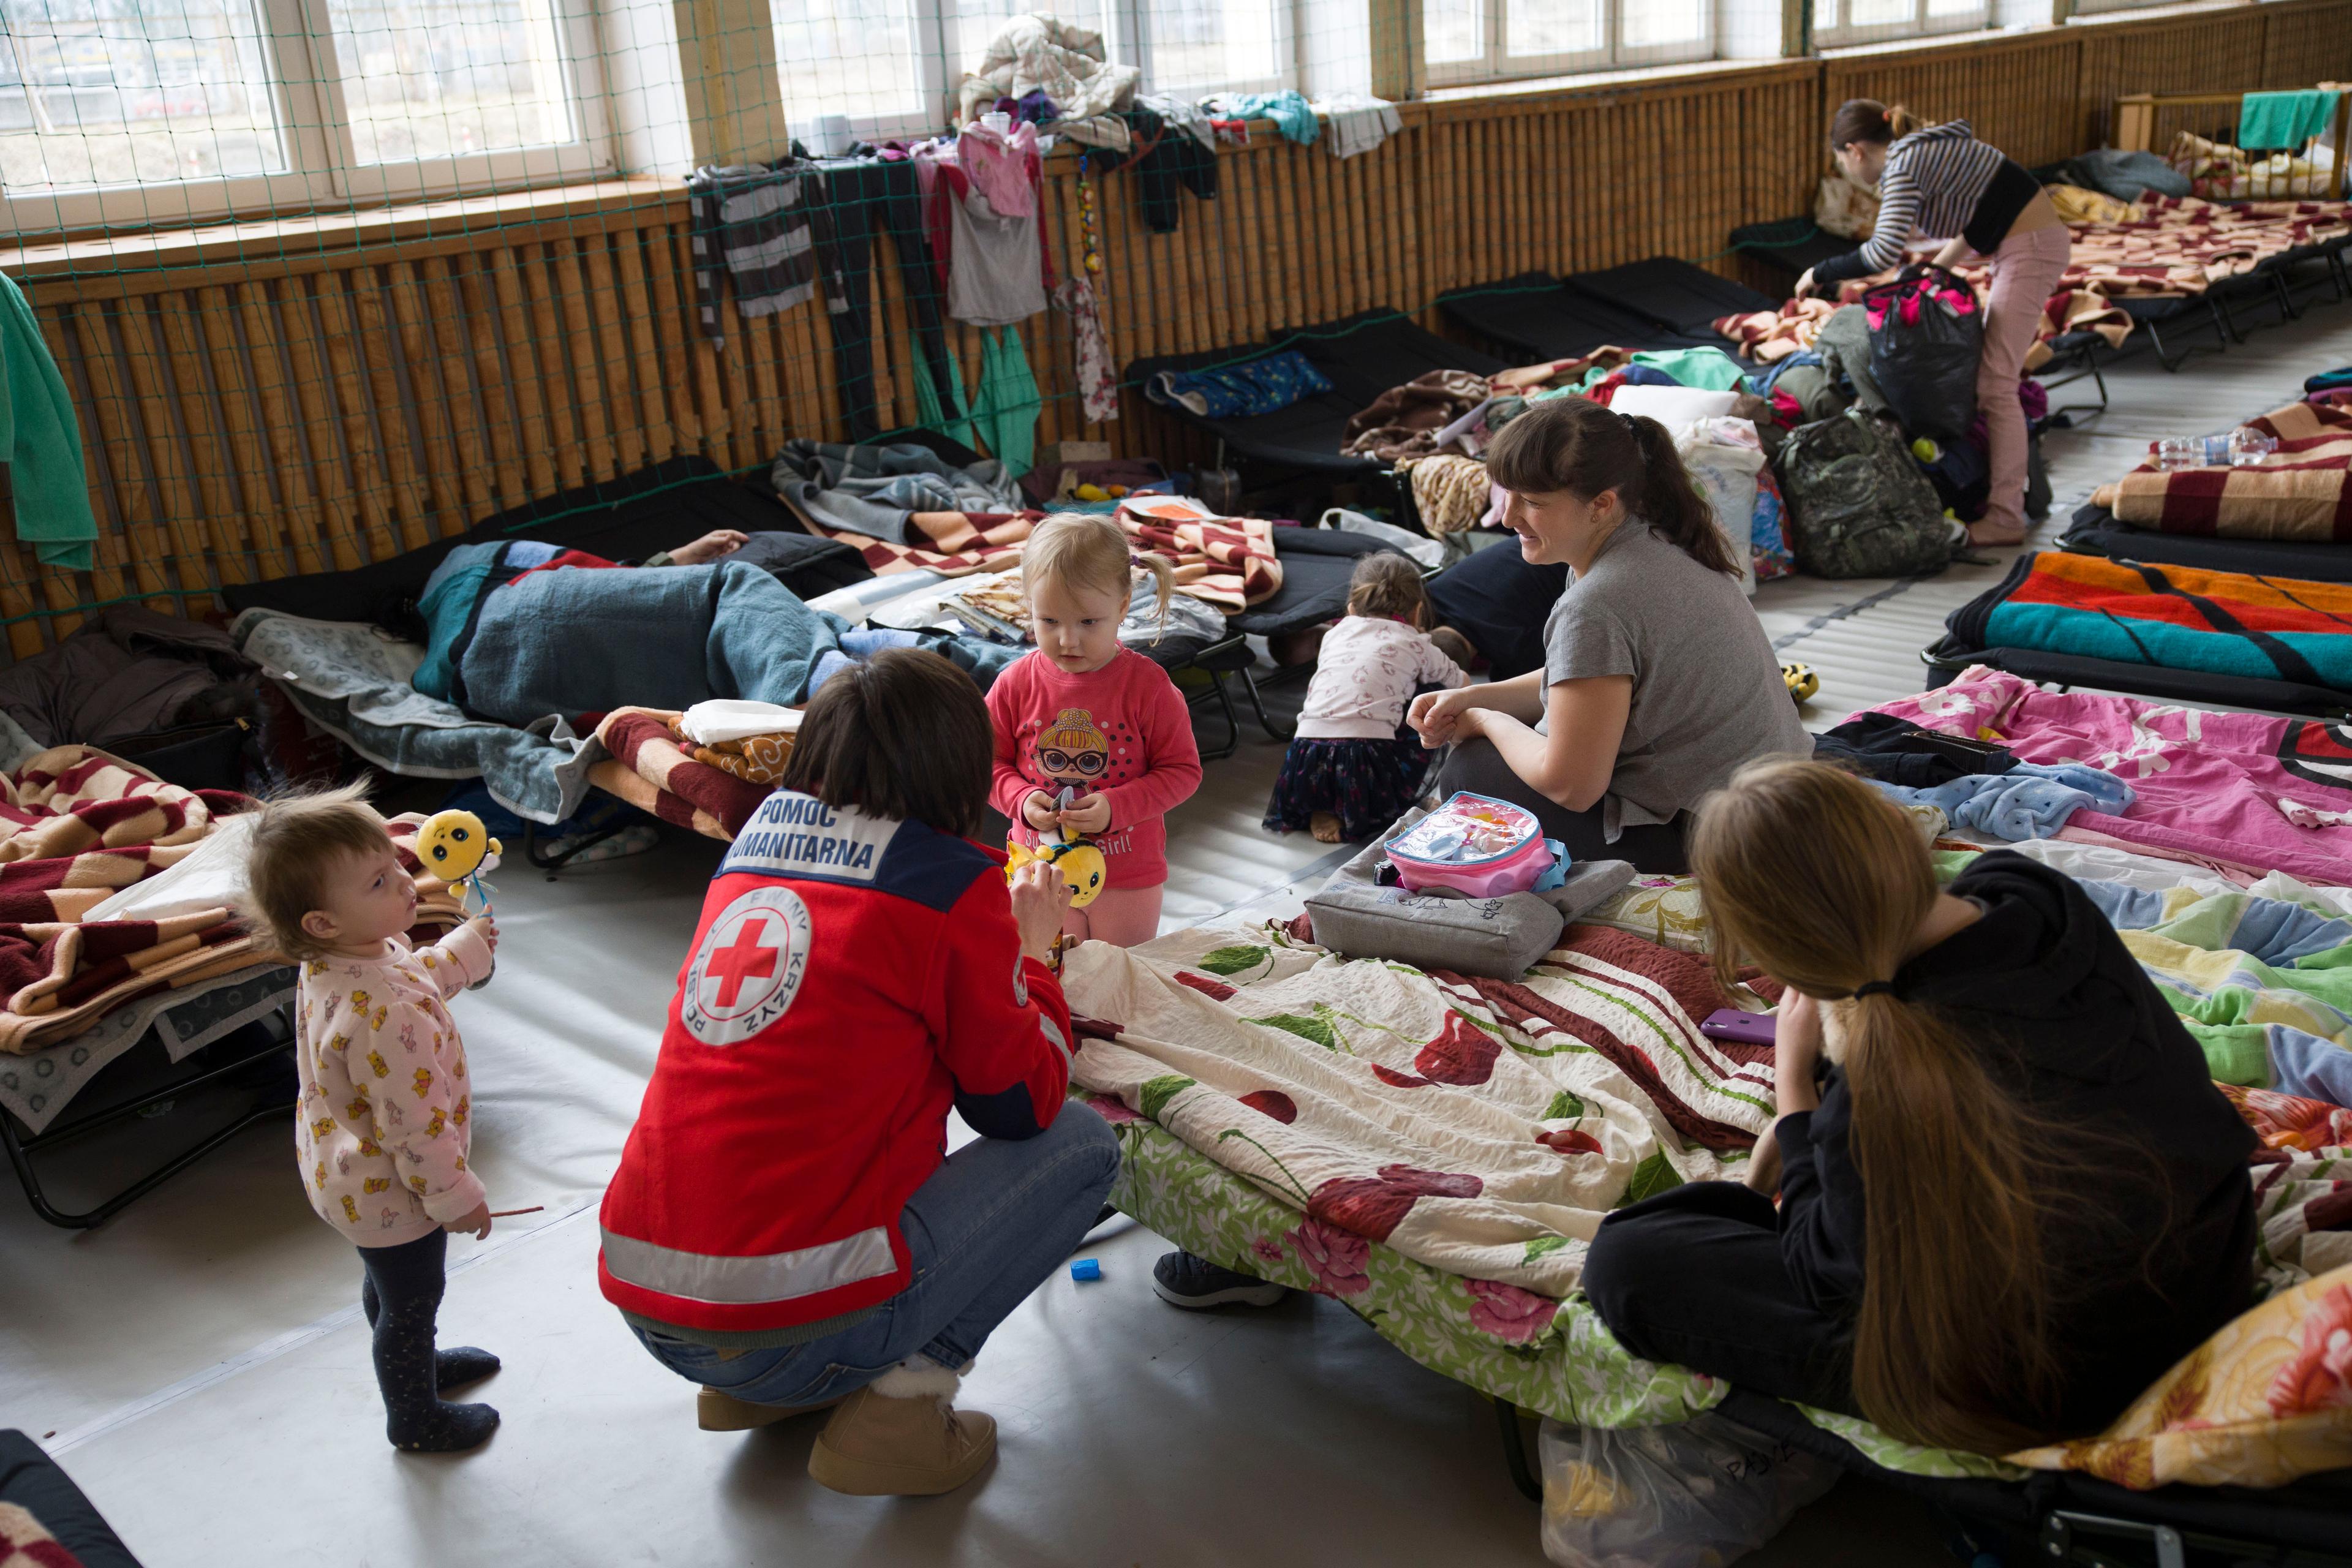 Une femme portant un gilet de la Croix-Rouge est accroupie près de deux jeunes femmes et de leurs enfants, encore petits. Elles sont dans un abri provisoire où sont alignés des dizaines de lits et de matelas. 